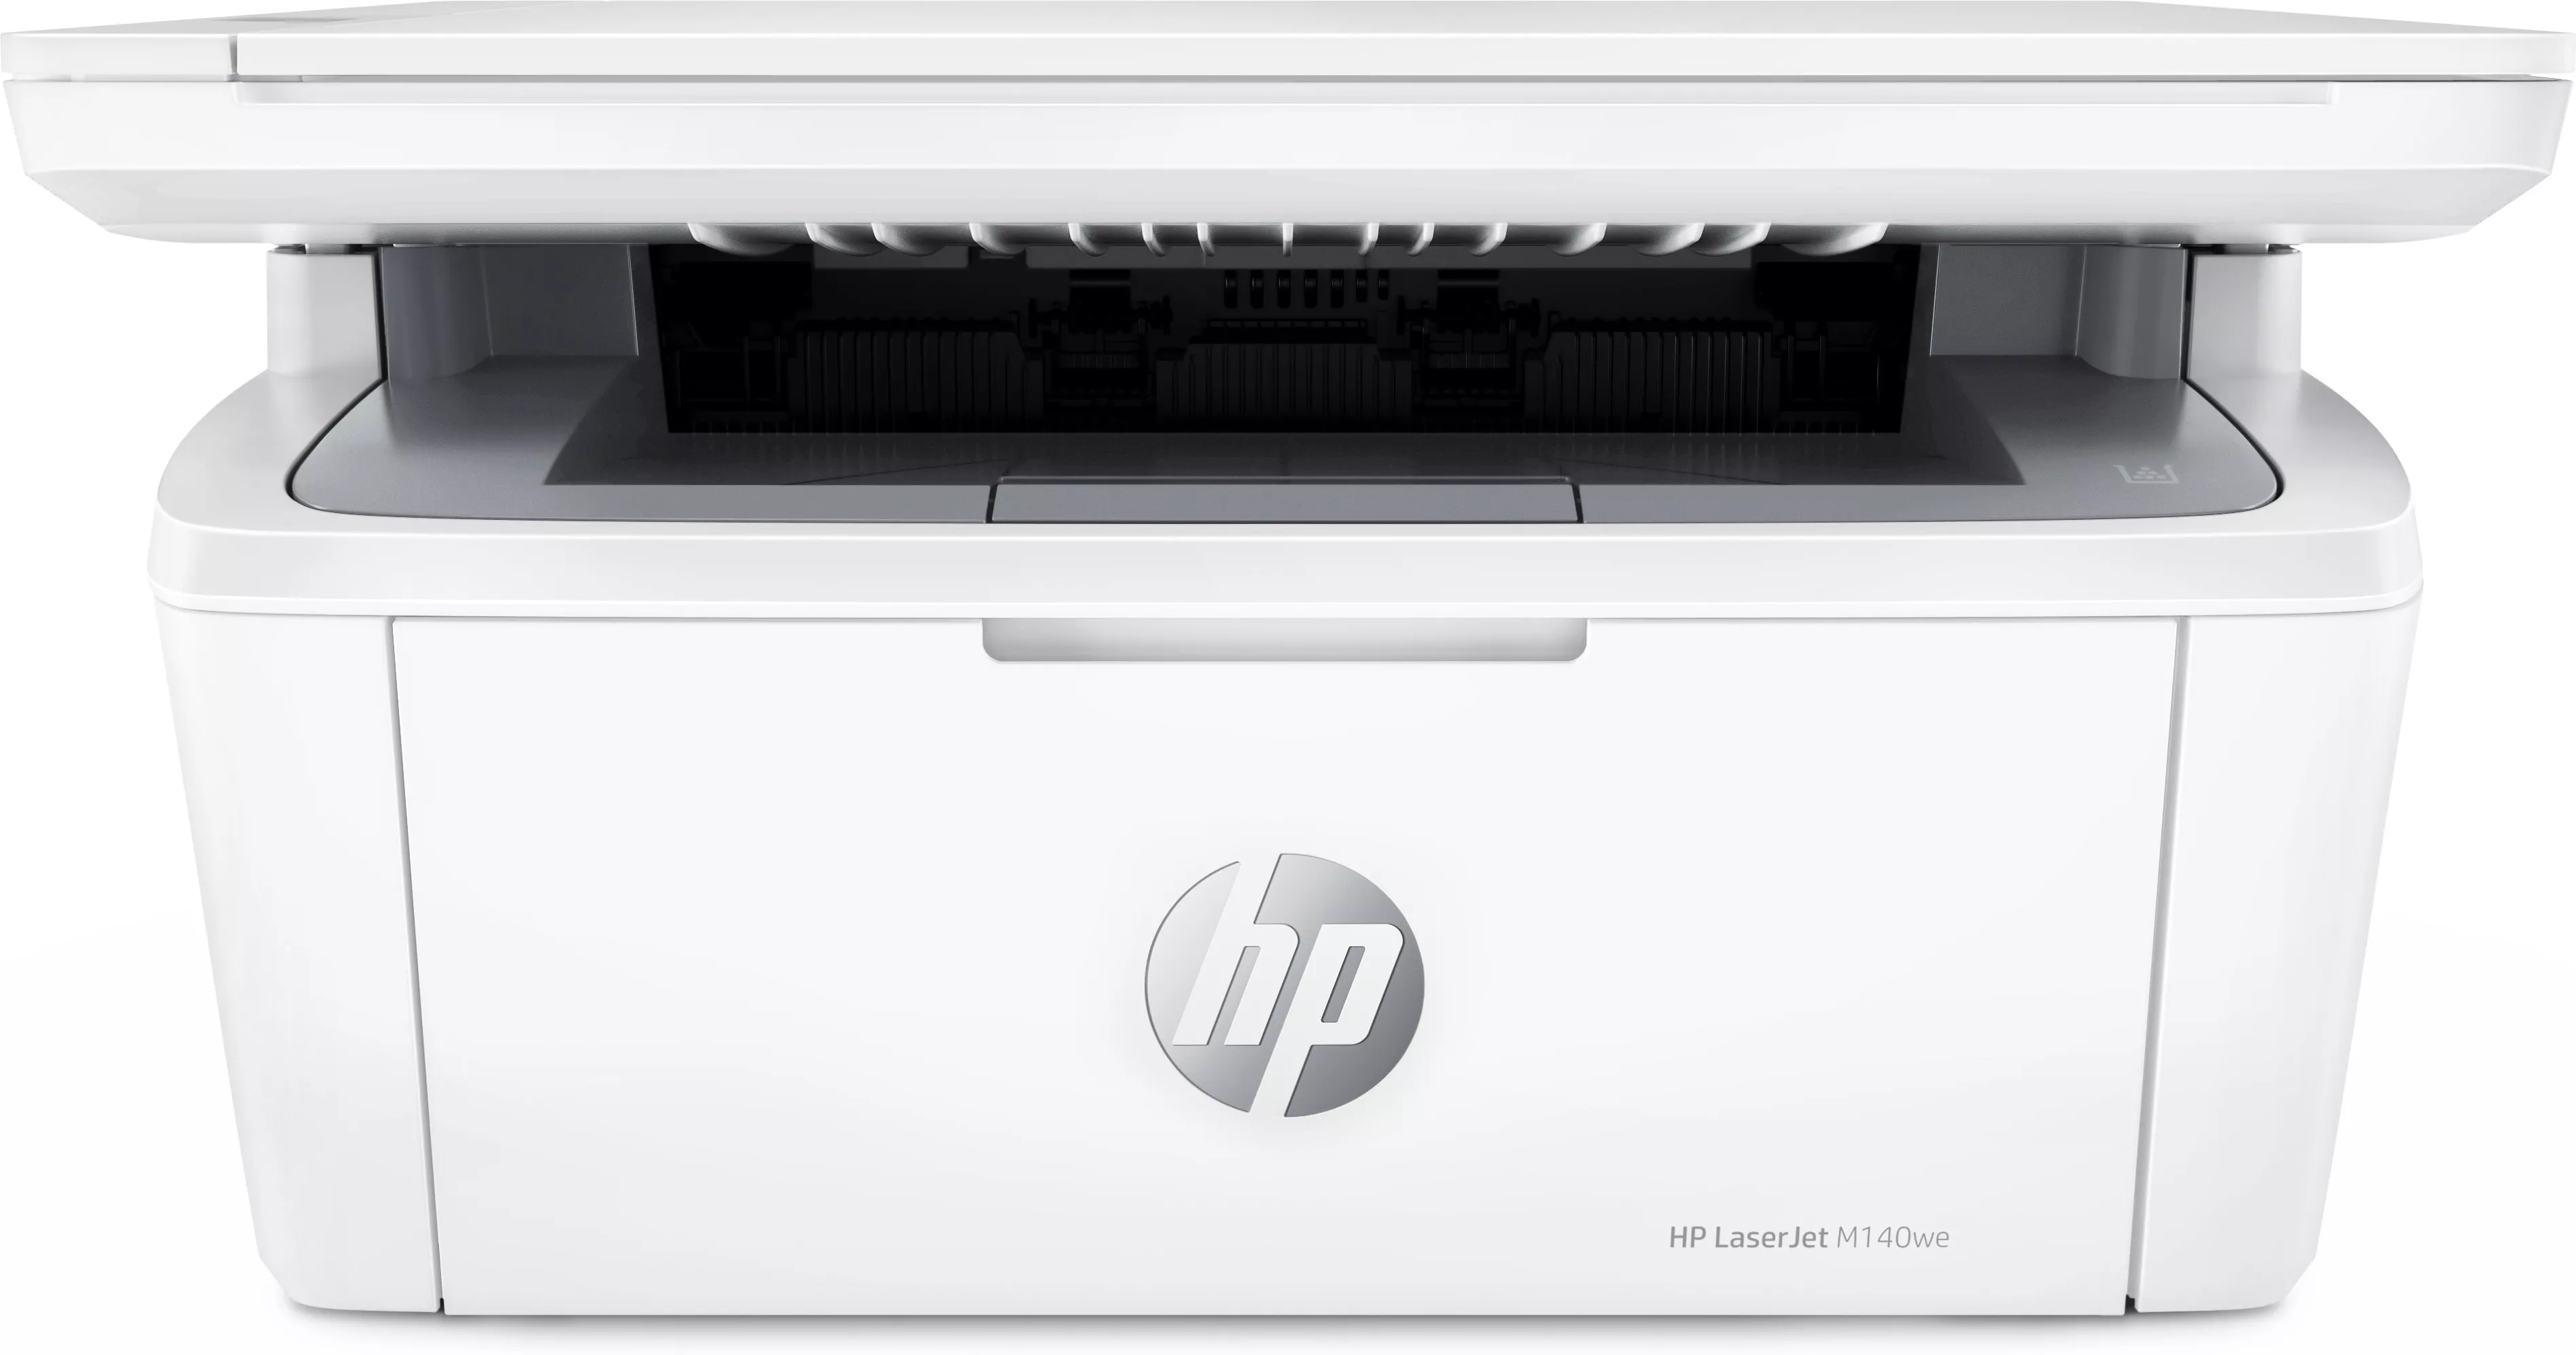 Achat HP LaserJet MFP M140WE Mono up to 20ppm Printer au meilleur prix